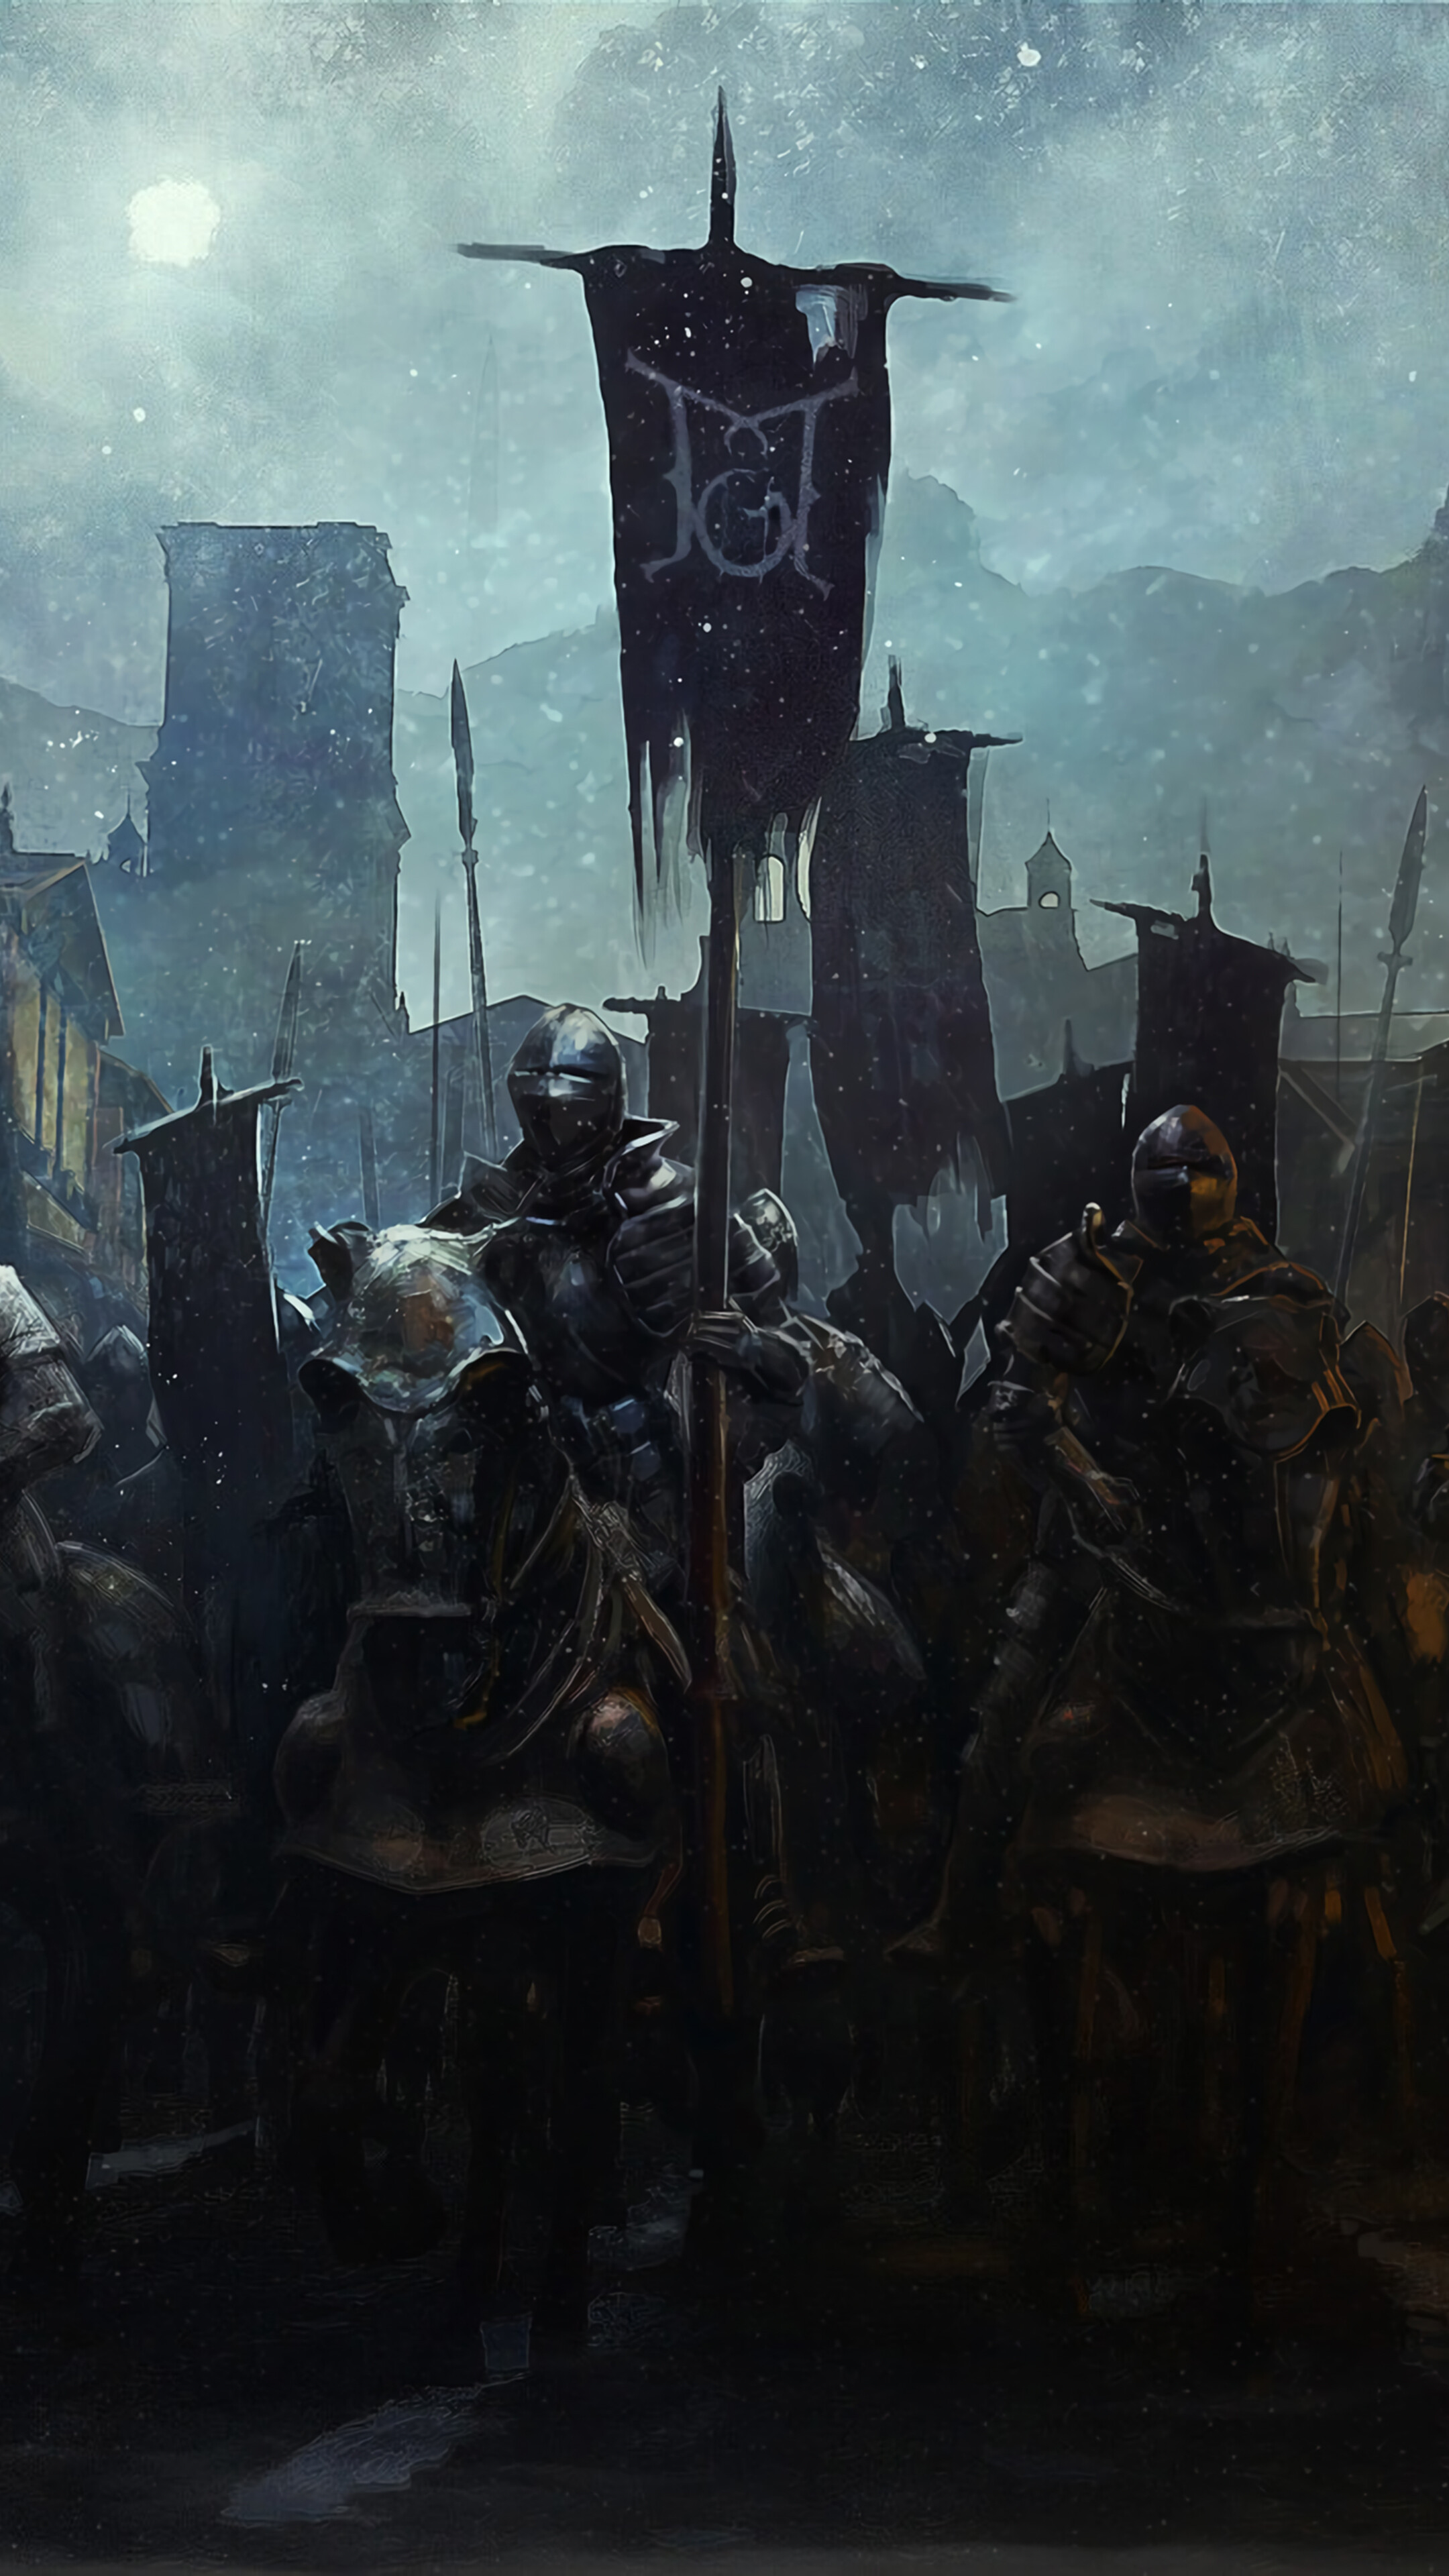 Knight Army Fantasy Medieval 4K Wallpaper 4995